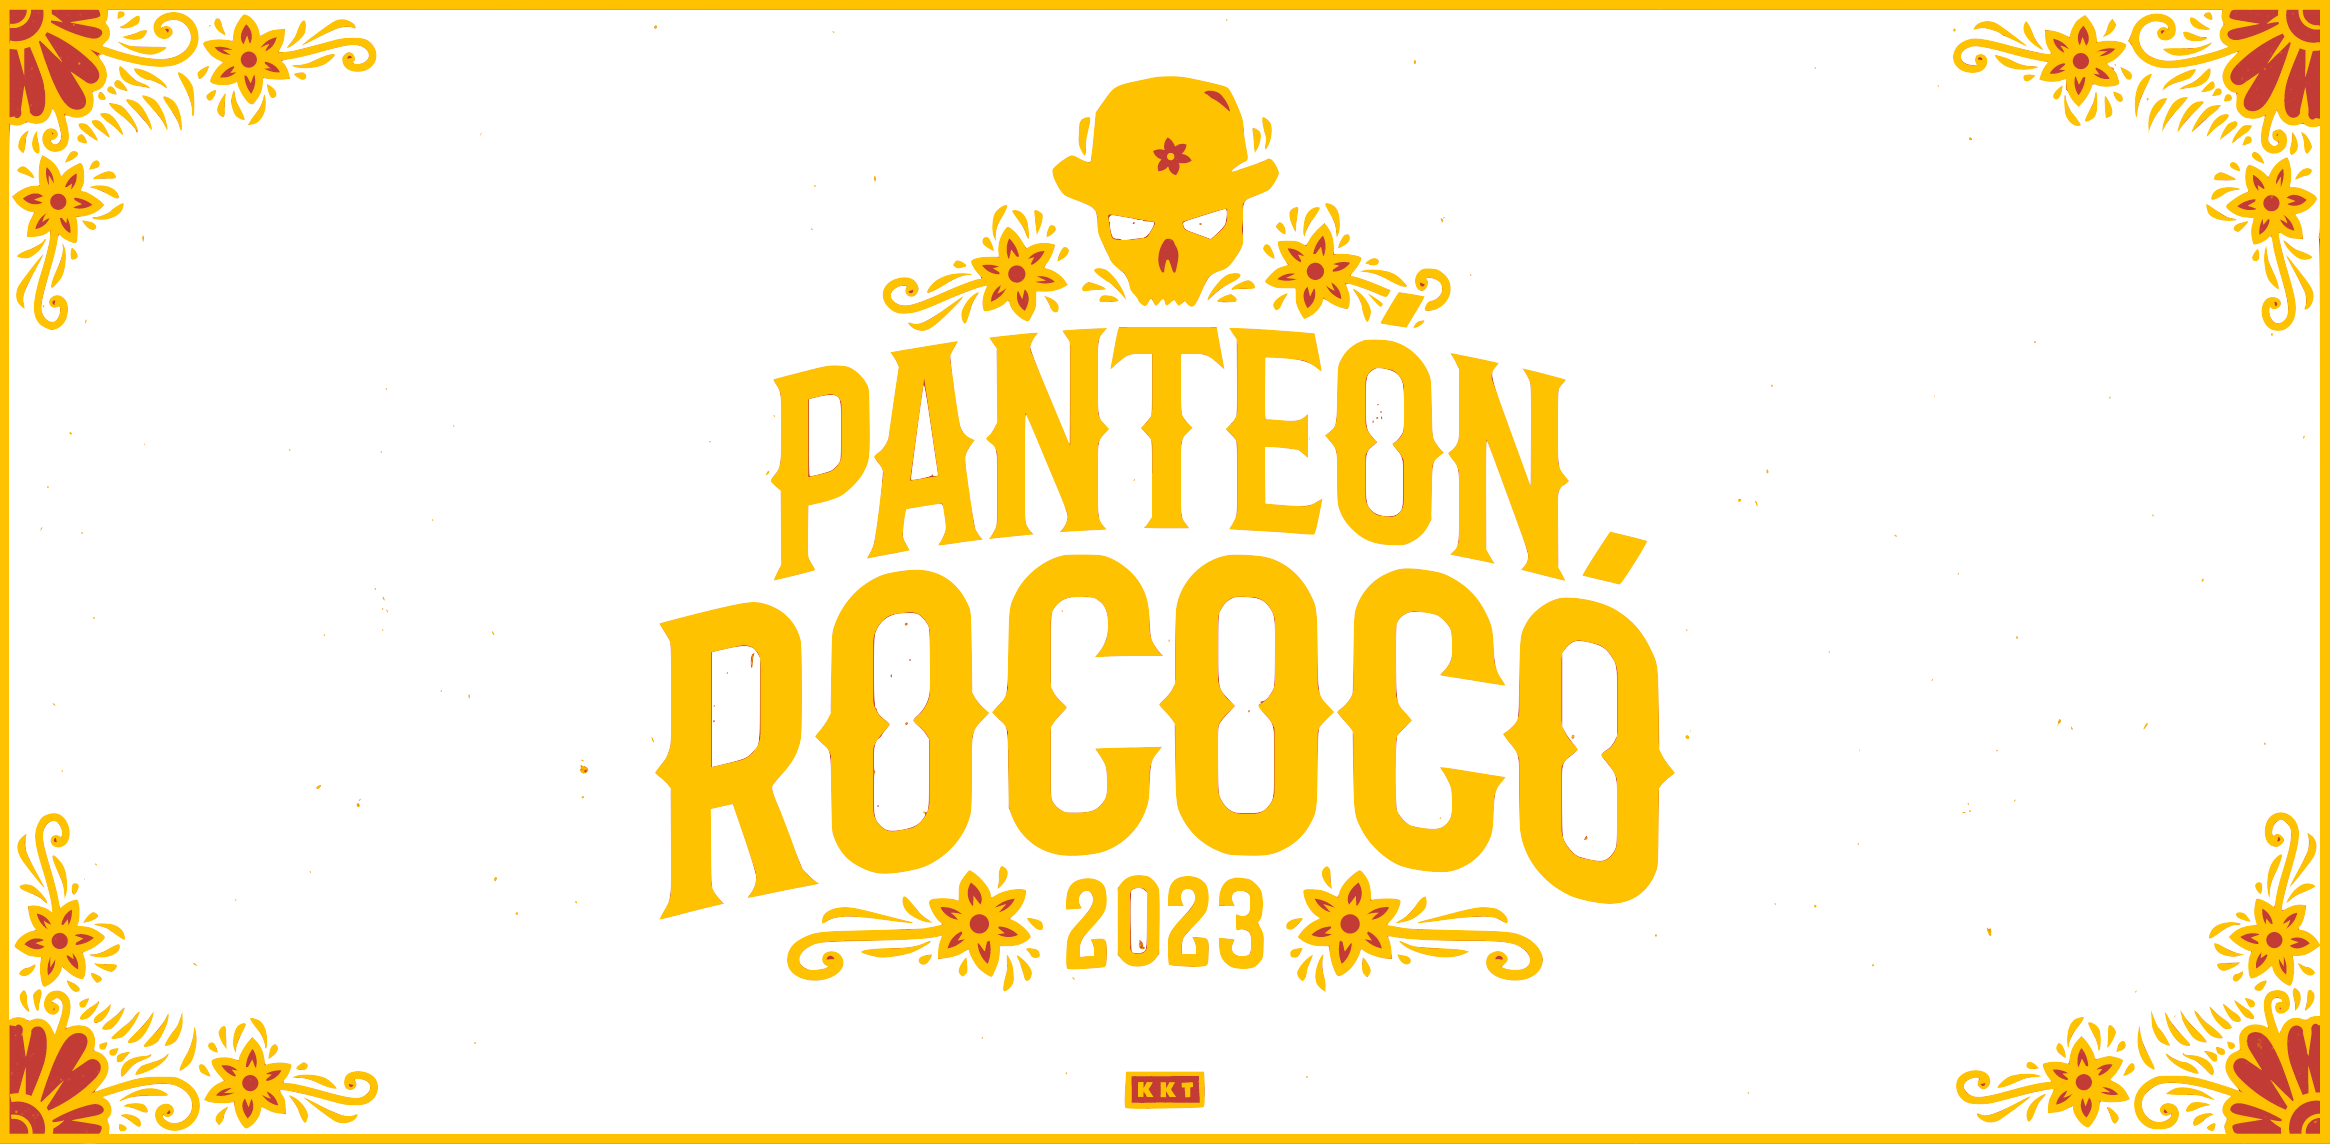 Panteon Rococo Tickets